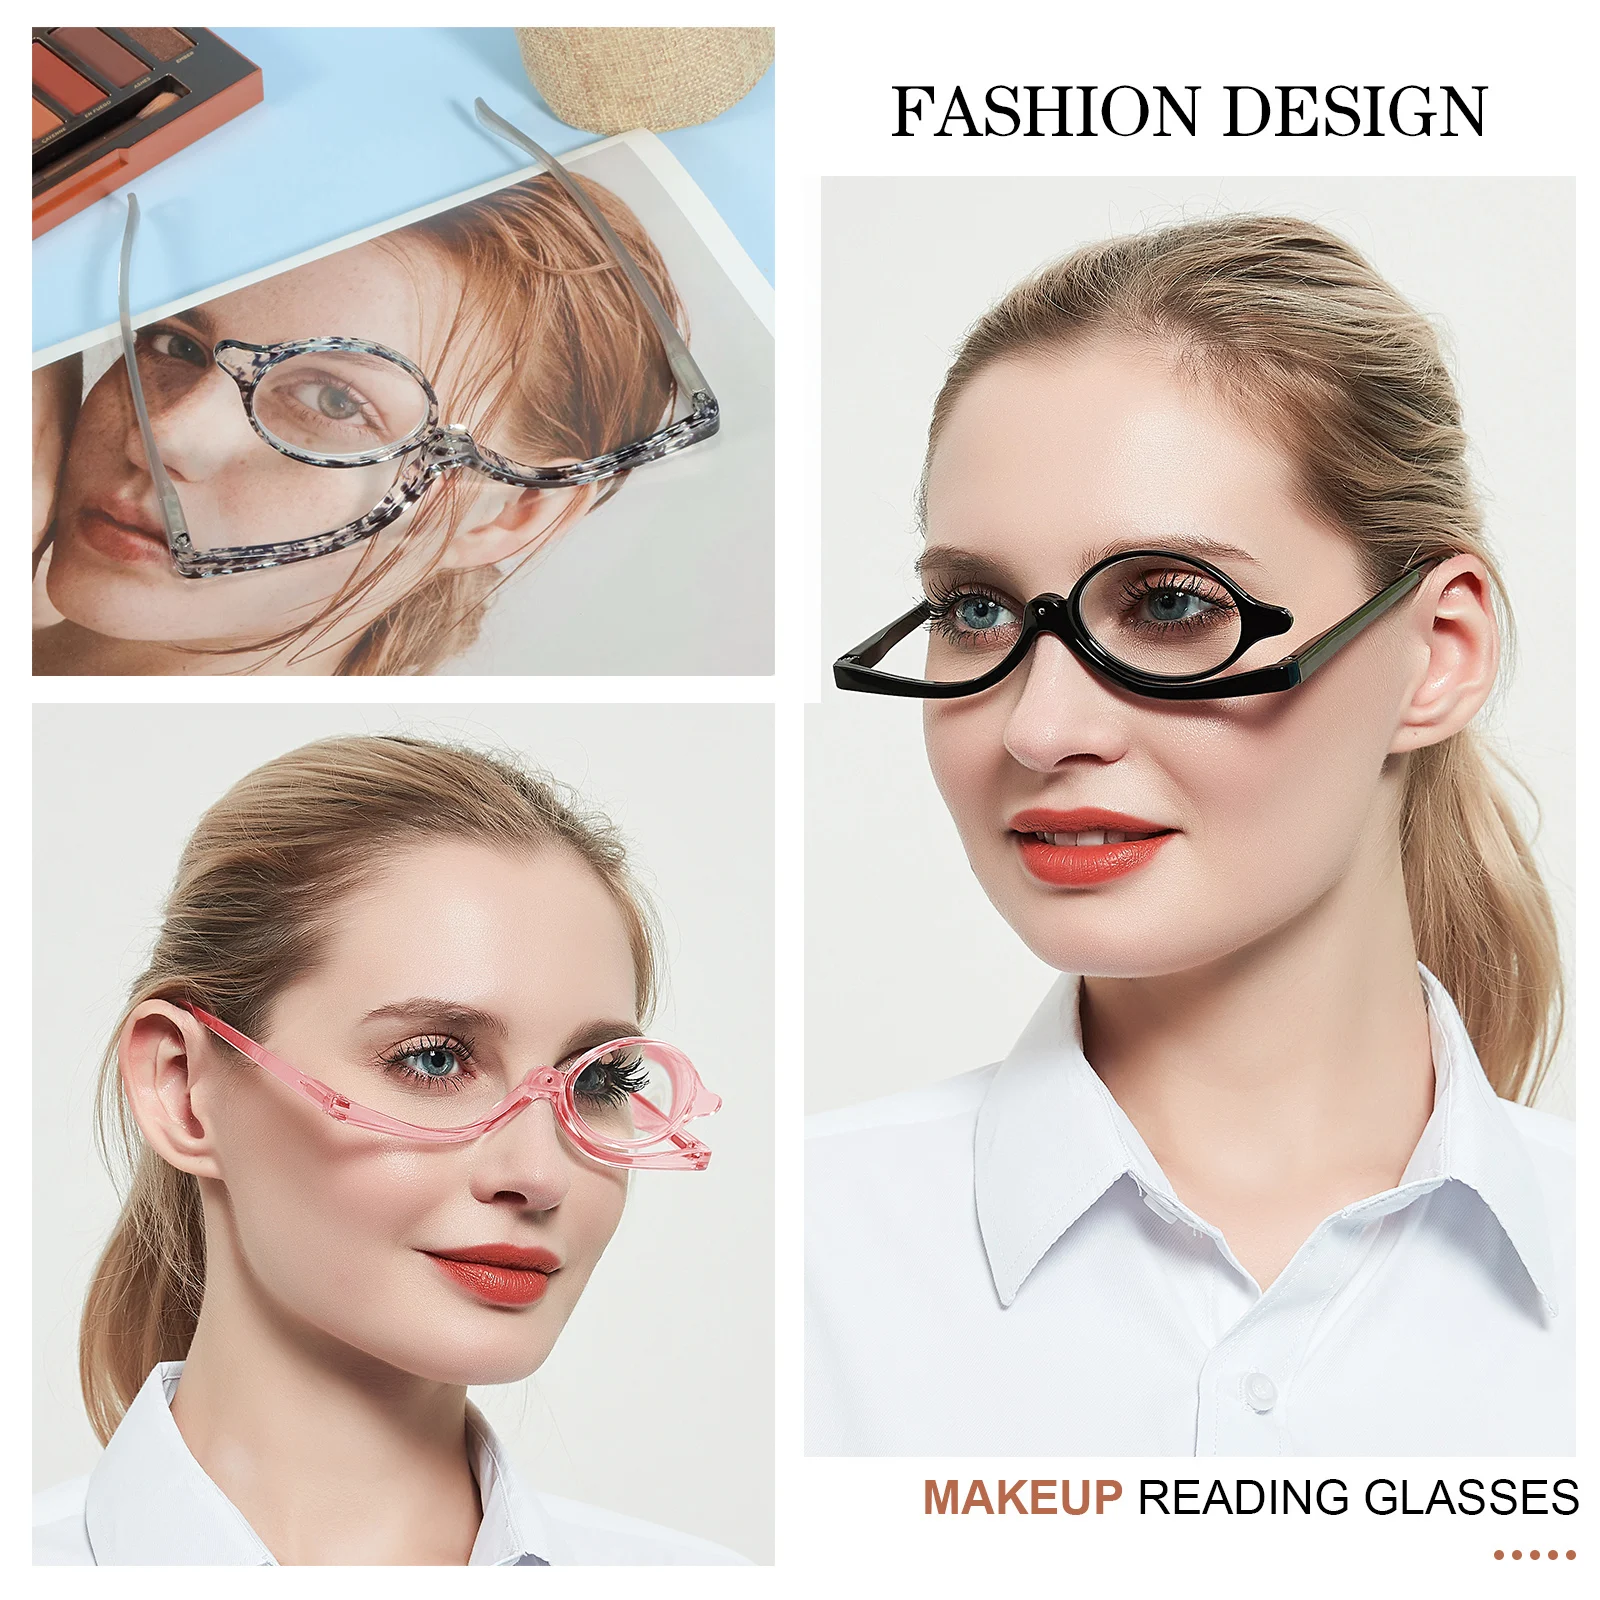 Gafas para maquillaje, gafas para maquillarse los ojos, lentes de aumento  de ojos, Maquillaje Gafas de Lectura Aumento Voltear Cosmético Lecotres,  herramientas esenciales de maquillaje femenino(#1) Ecomeon no